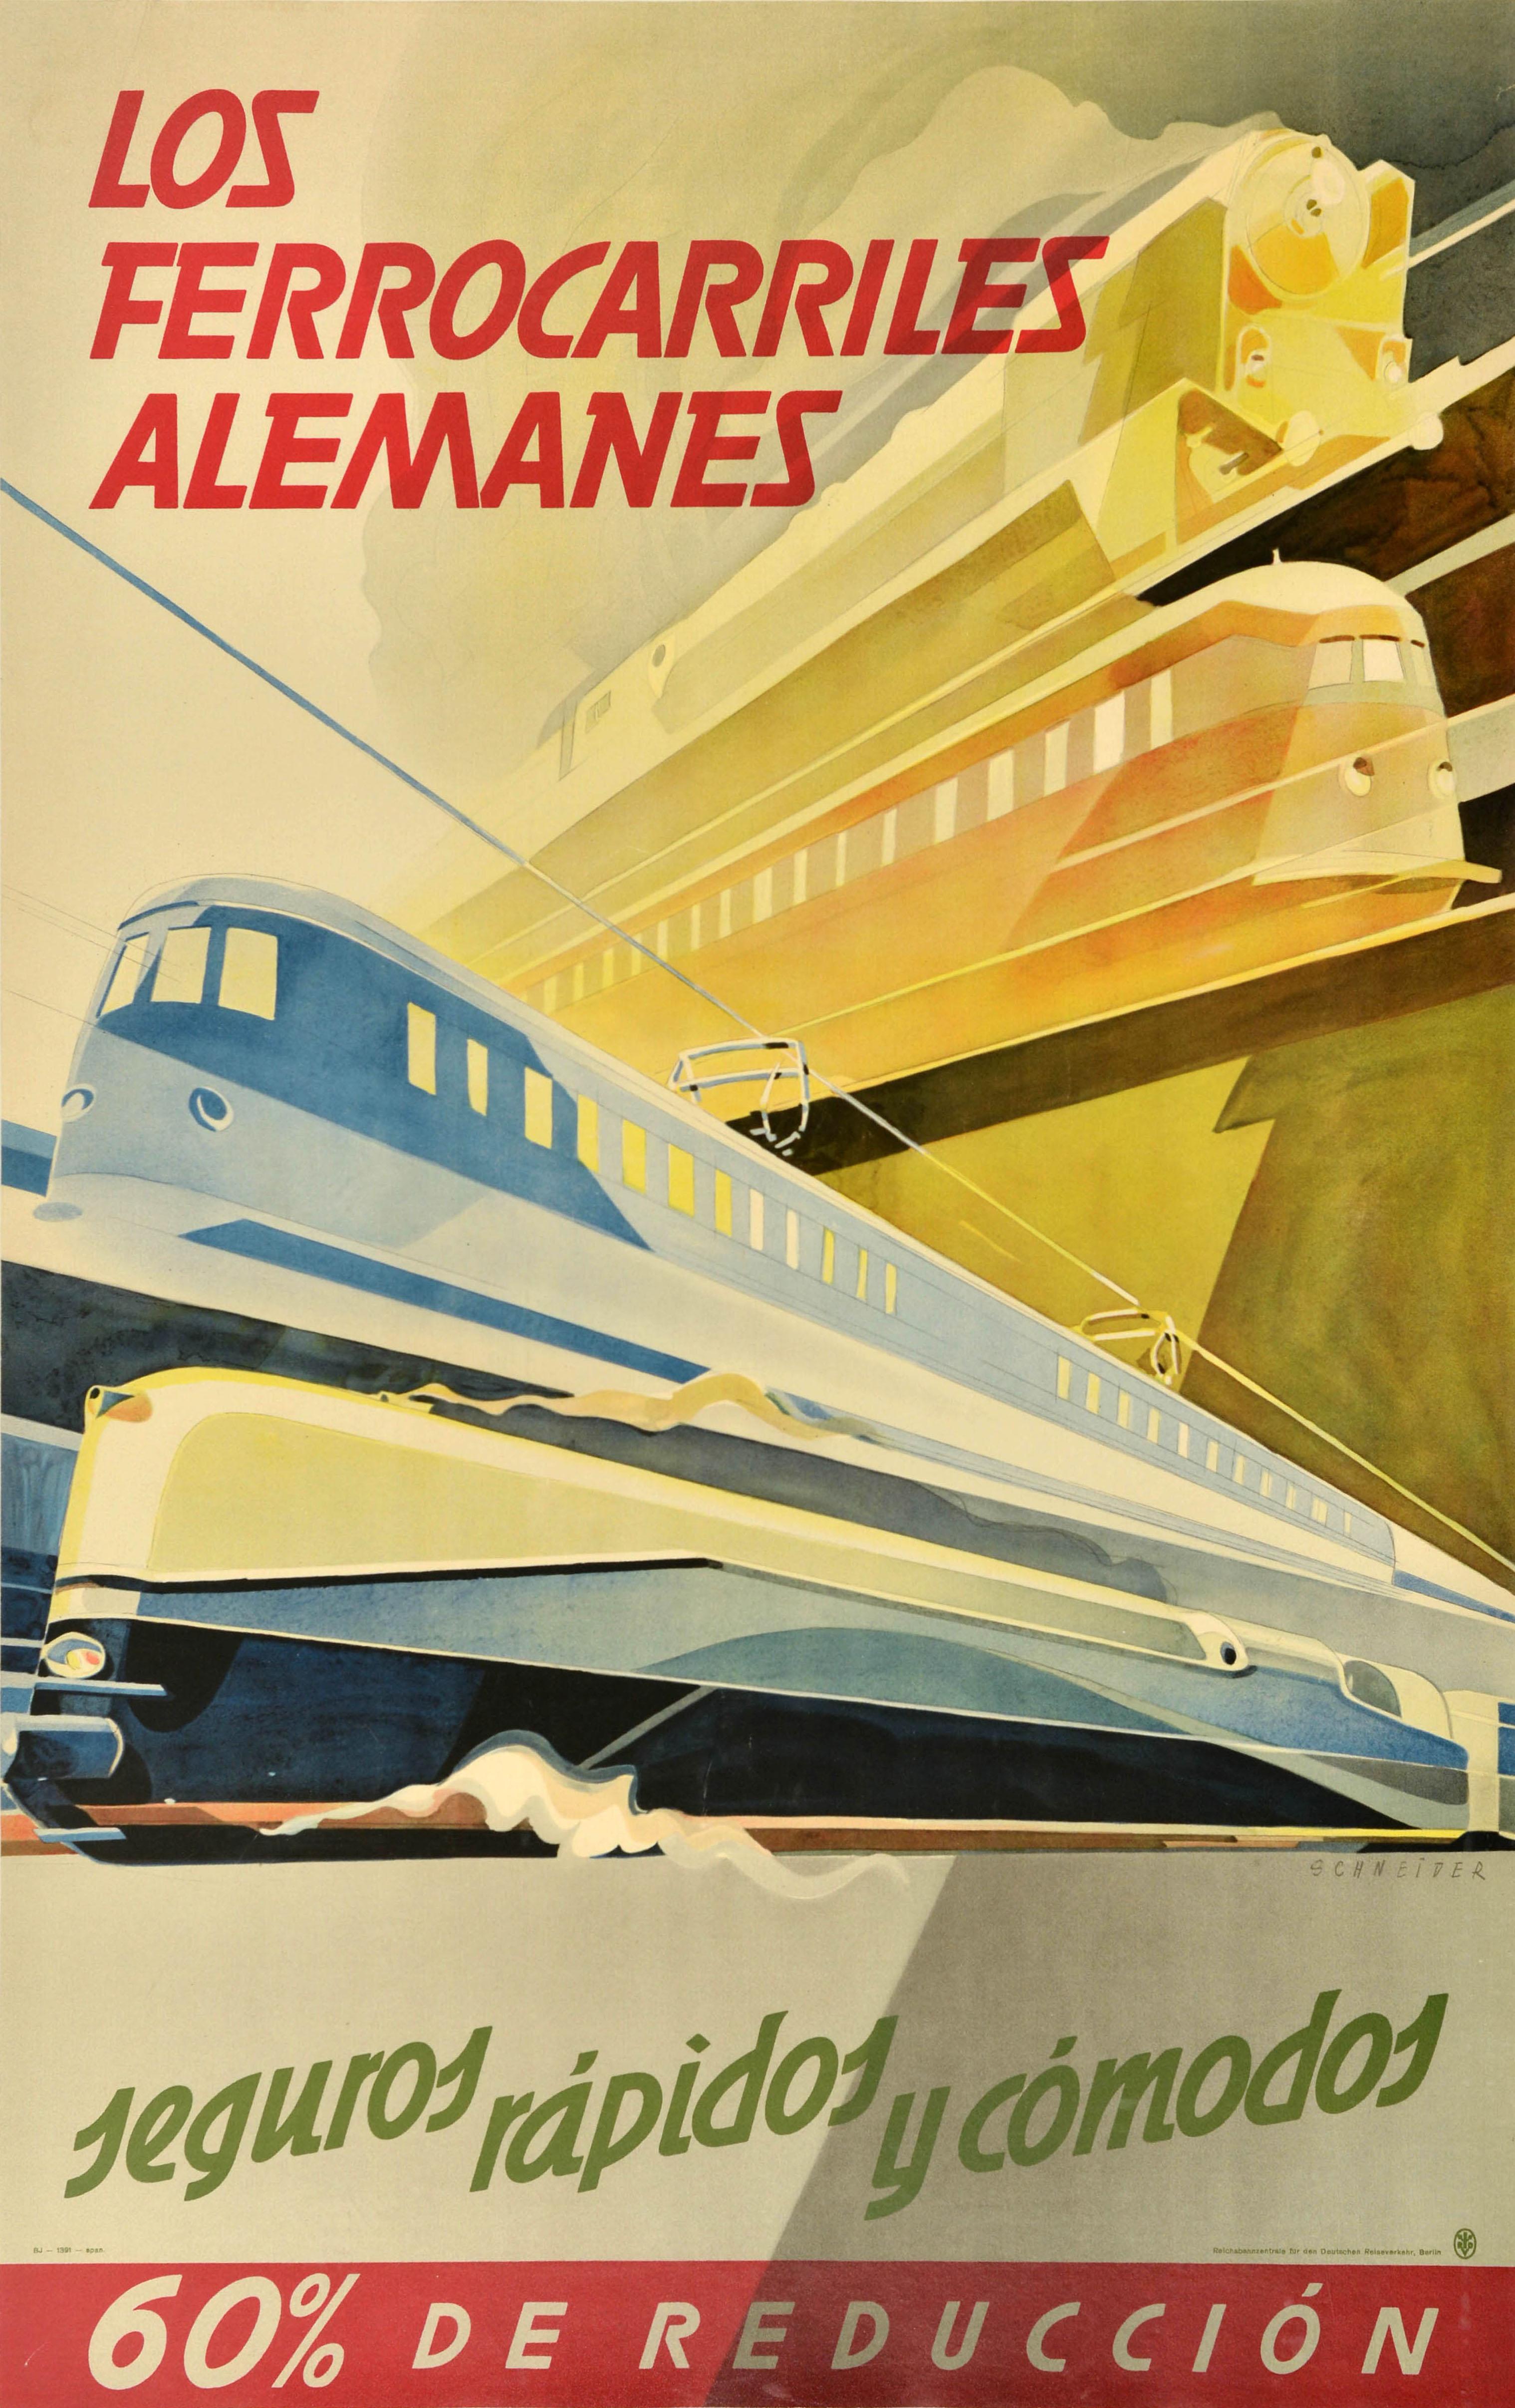 Hans Schneider Print - Original Vintage Travel Advertising Poster German Railways Ferrocarriles Alemane